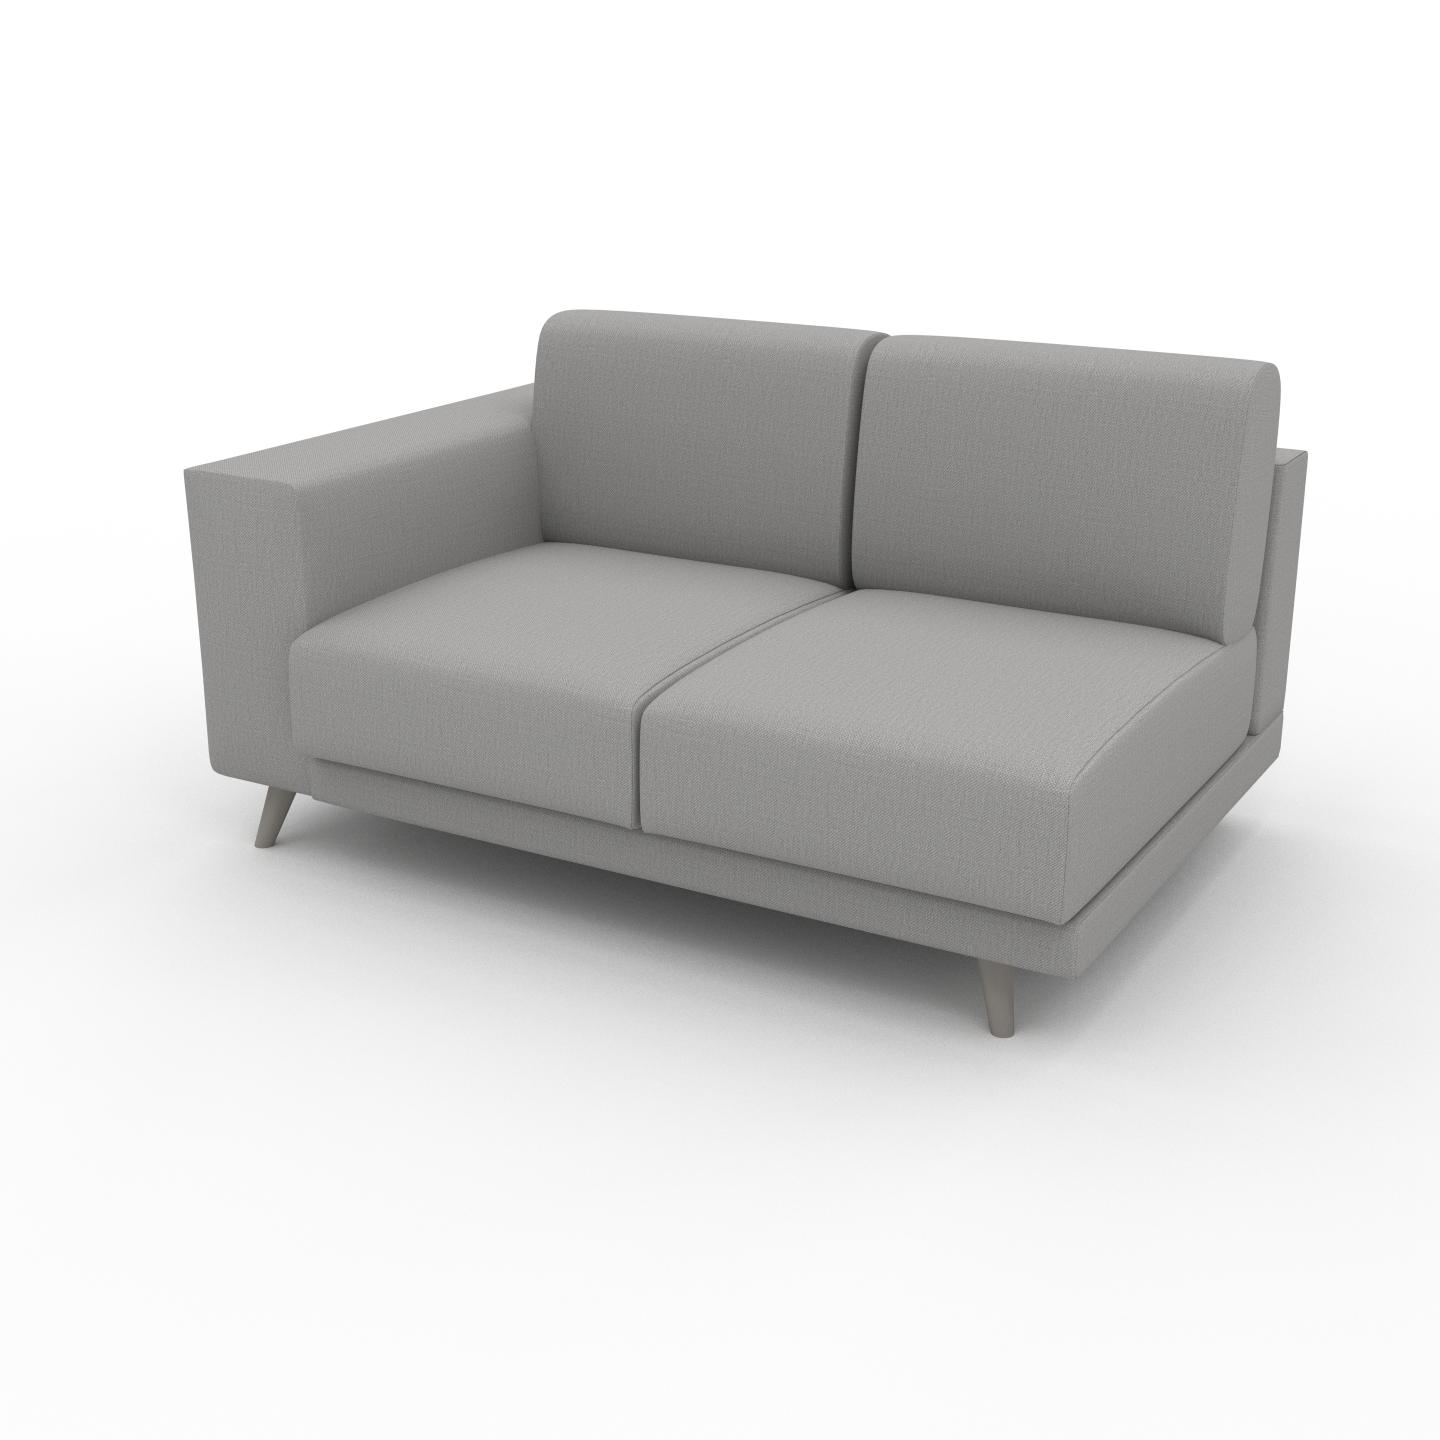 MYCS Sofa Lichtgrau - Moderne Designer-Couch: Hochwertige Qualität, einzigartiges Design - 144 x 75 x 98 cm, Komplett anpassbar